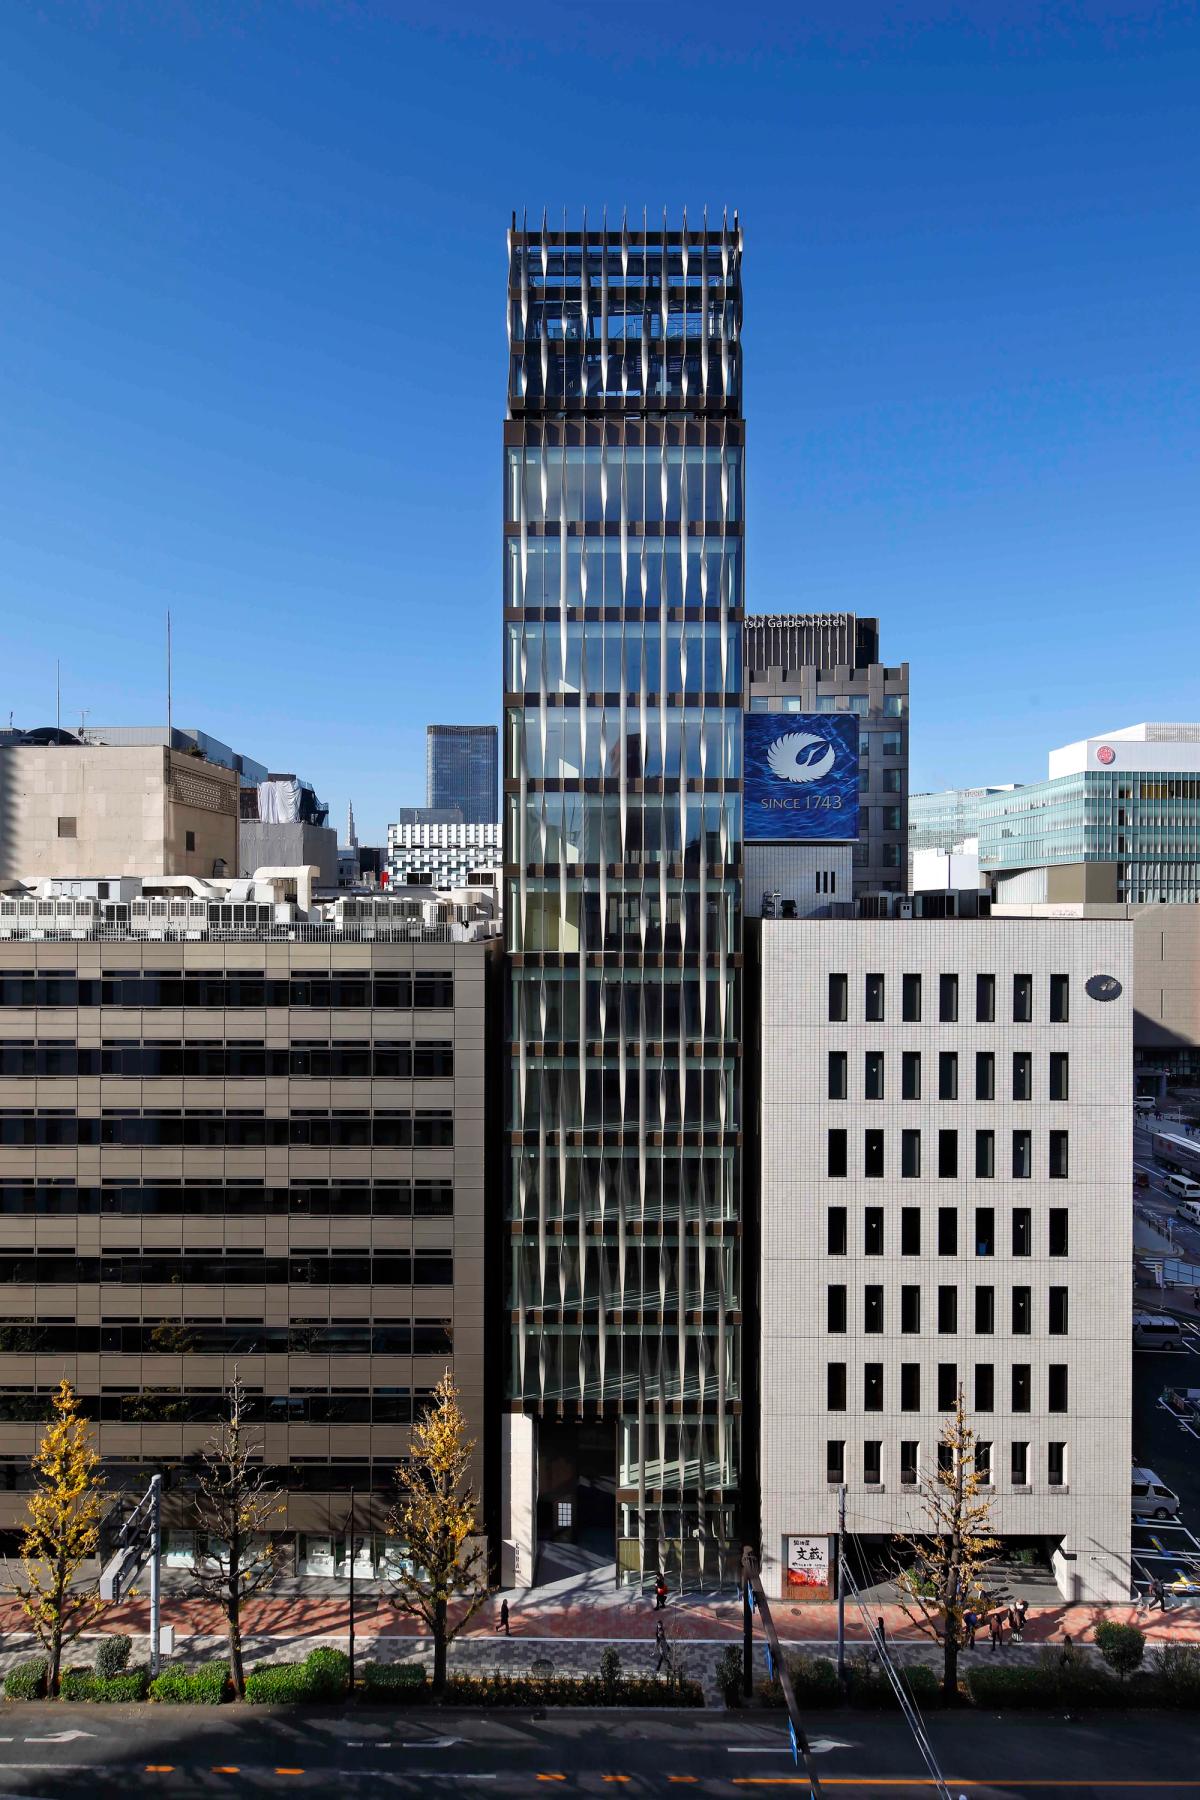 La galerie Ceysson & Bénétière s'installera au 8e étage de l'immeuble au centre de la photo, à Tokyo. 

© Eaton Real Estate Corporation